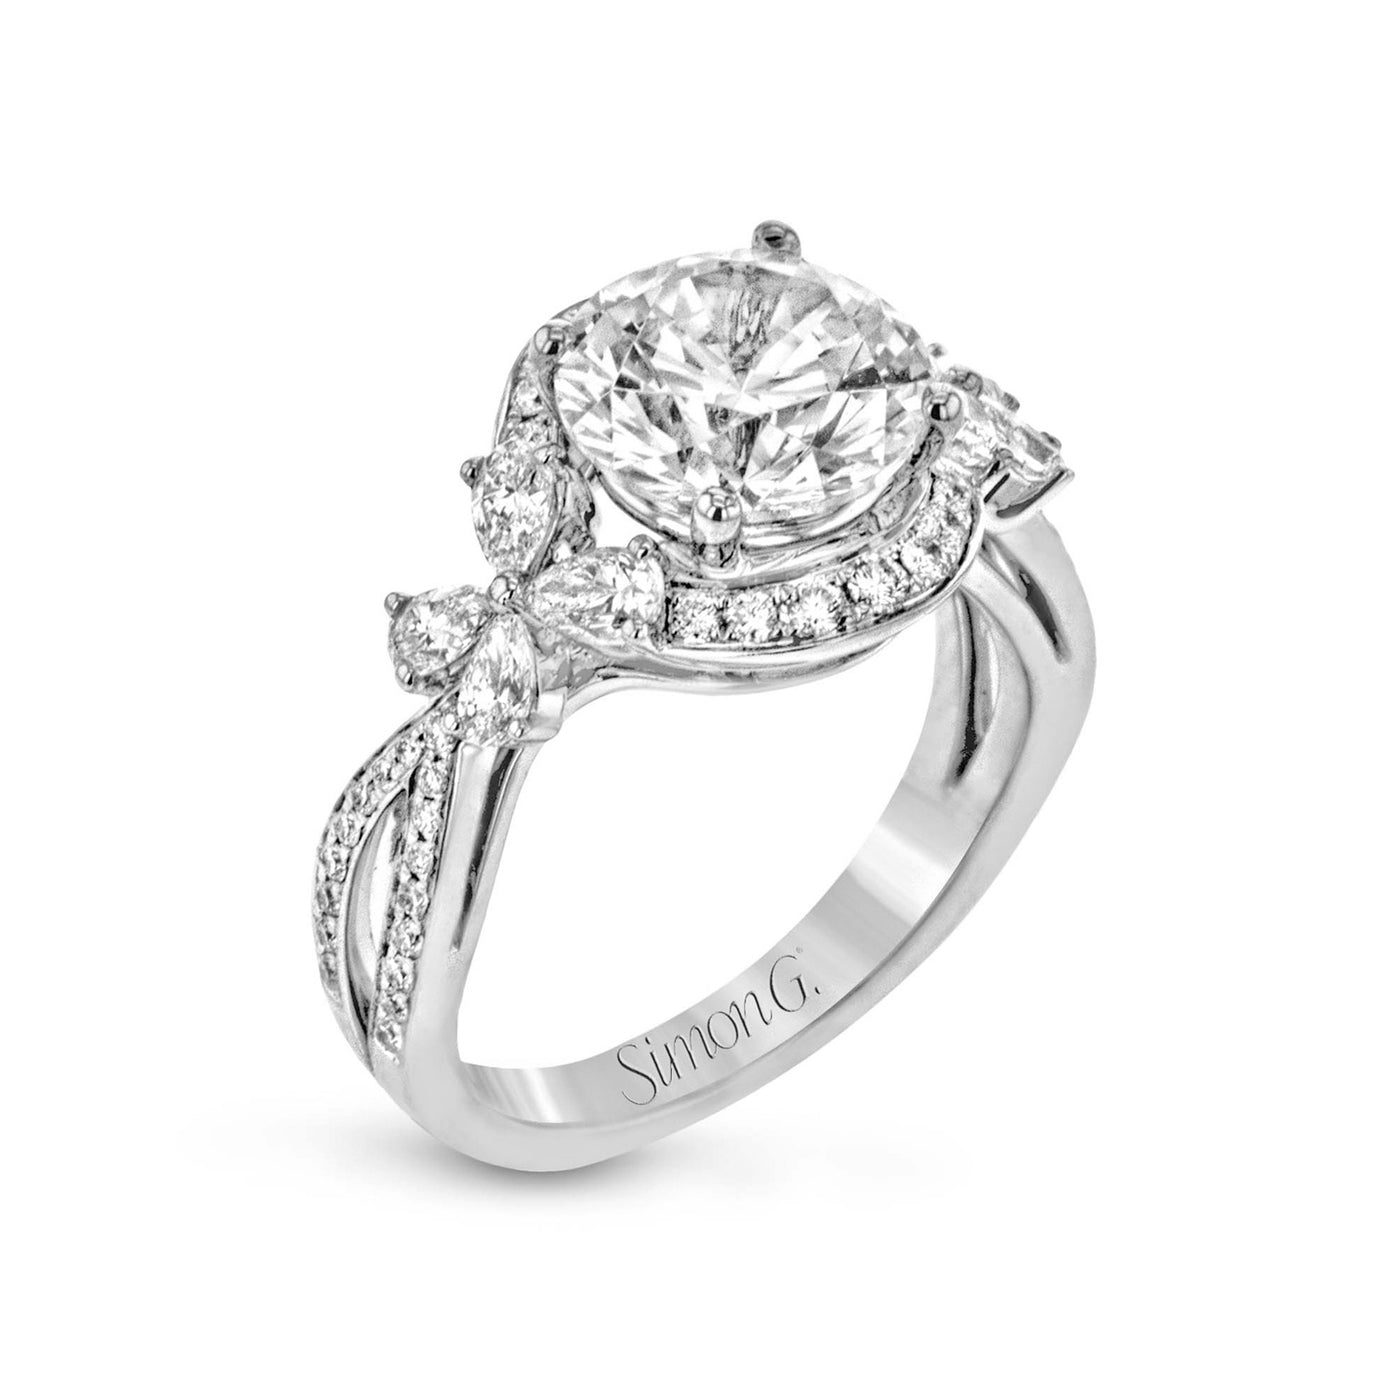 Simon G 18k White Gold Round Halo Diamond Semi-Mount Engagement Ring – LP2301